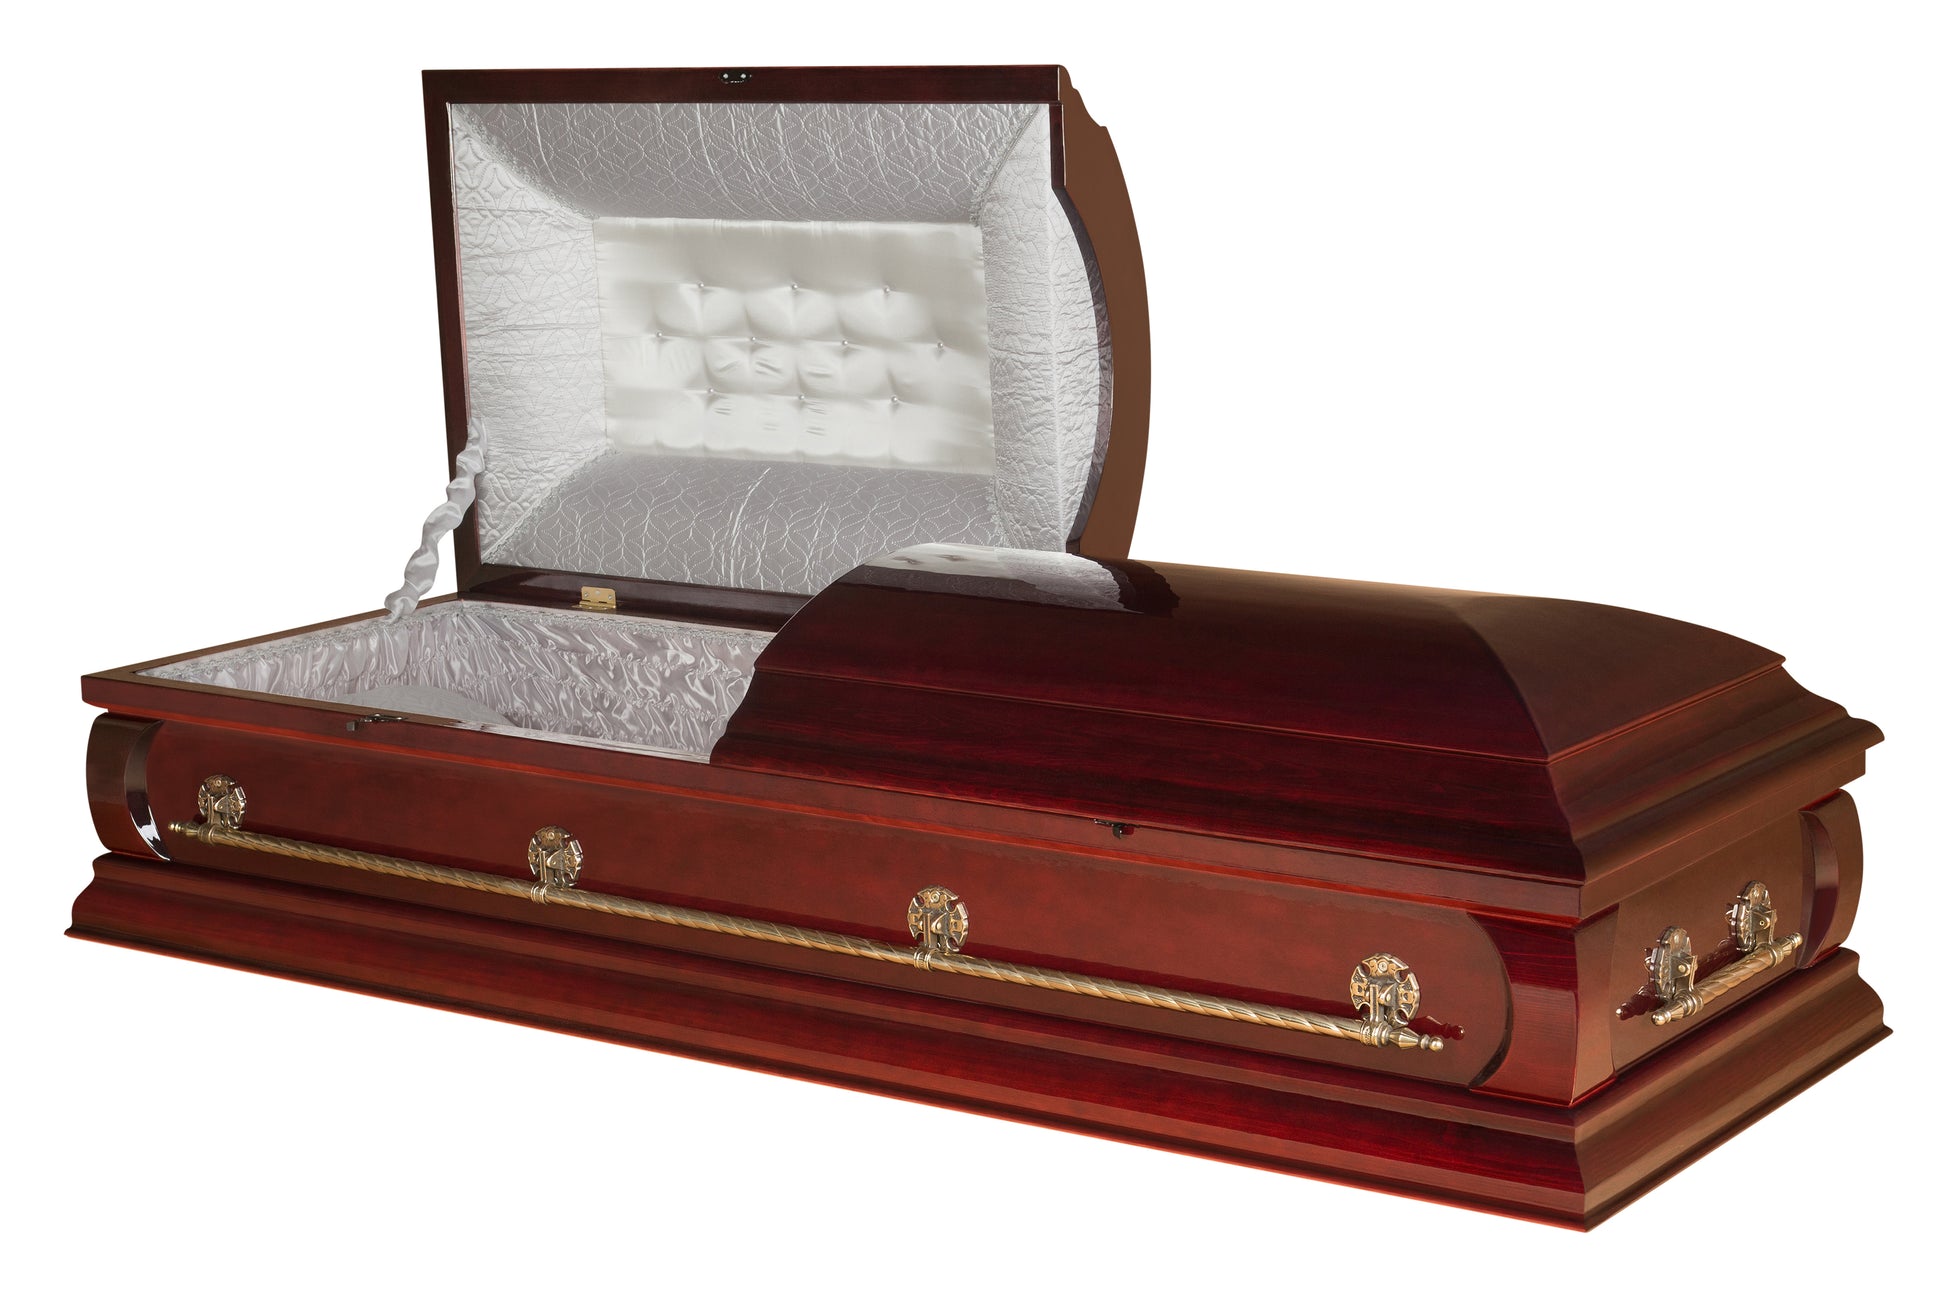 cherry wood caskets